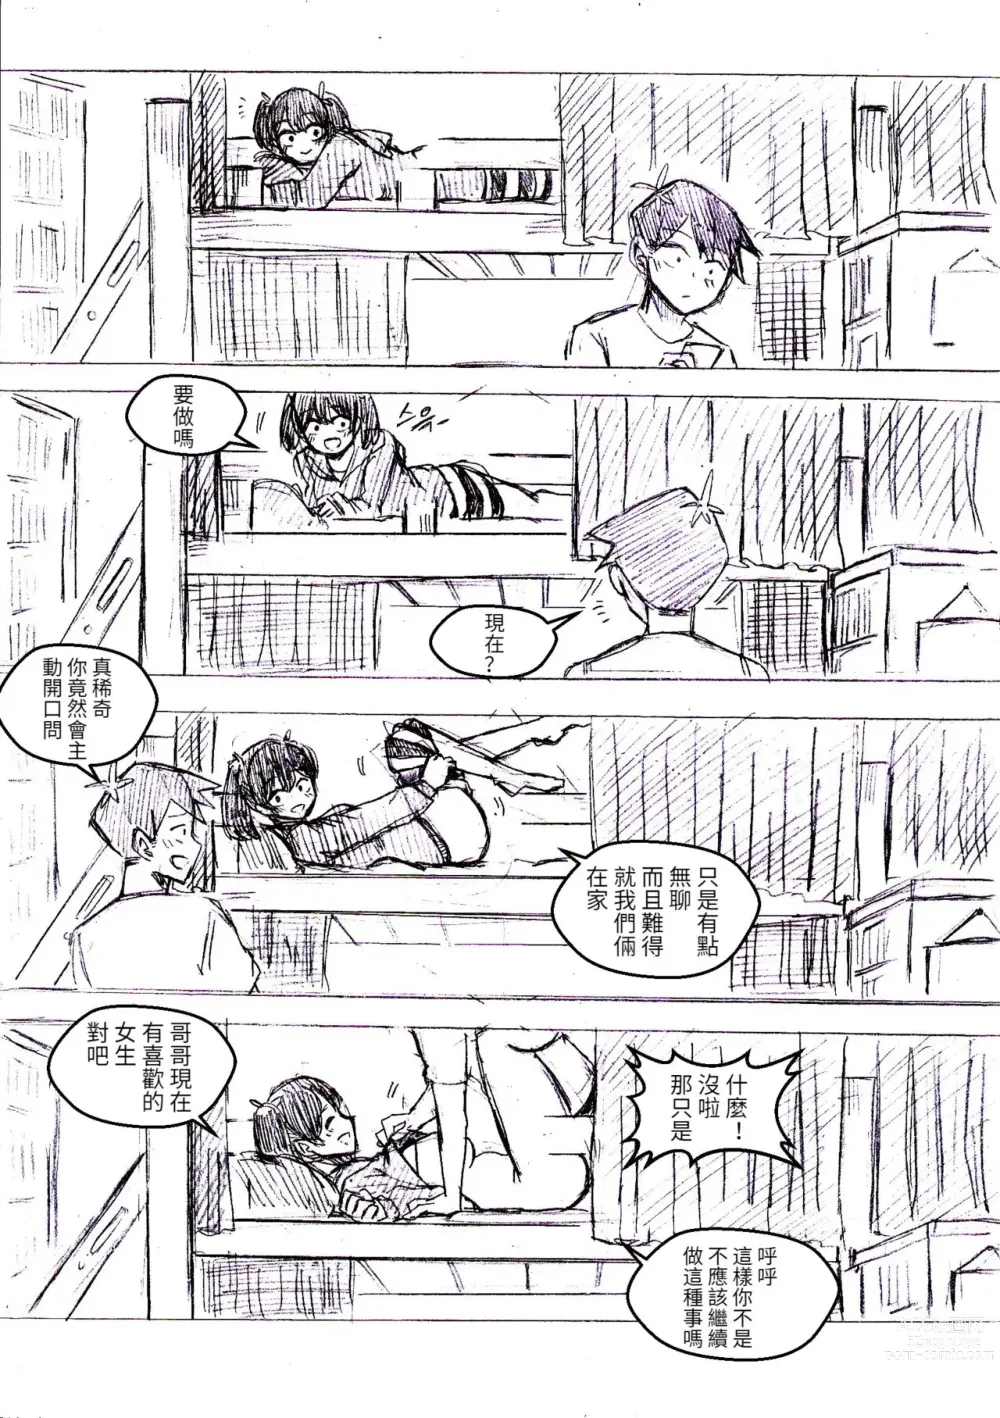 Page 2 of doujinshi 只野兄妹關係很好!